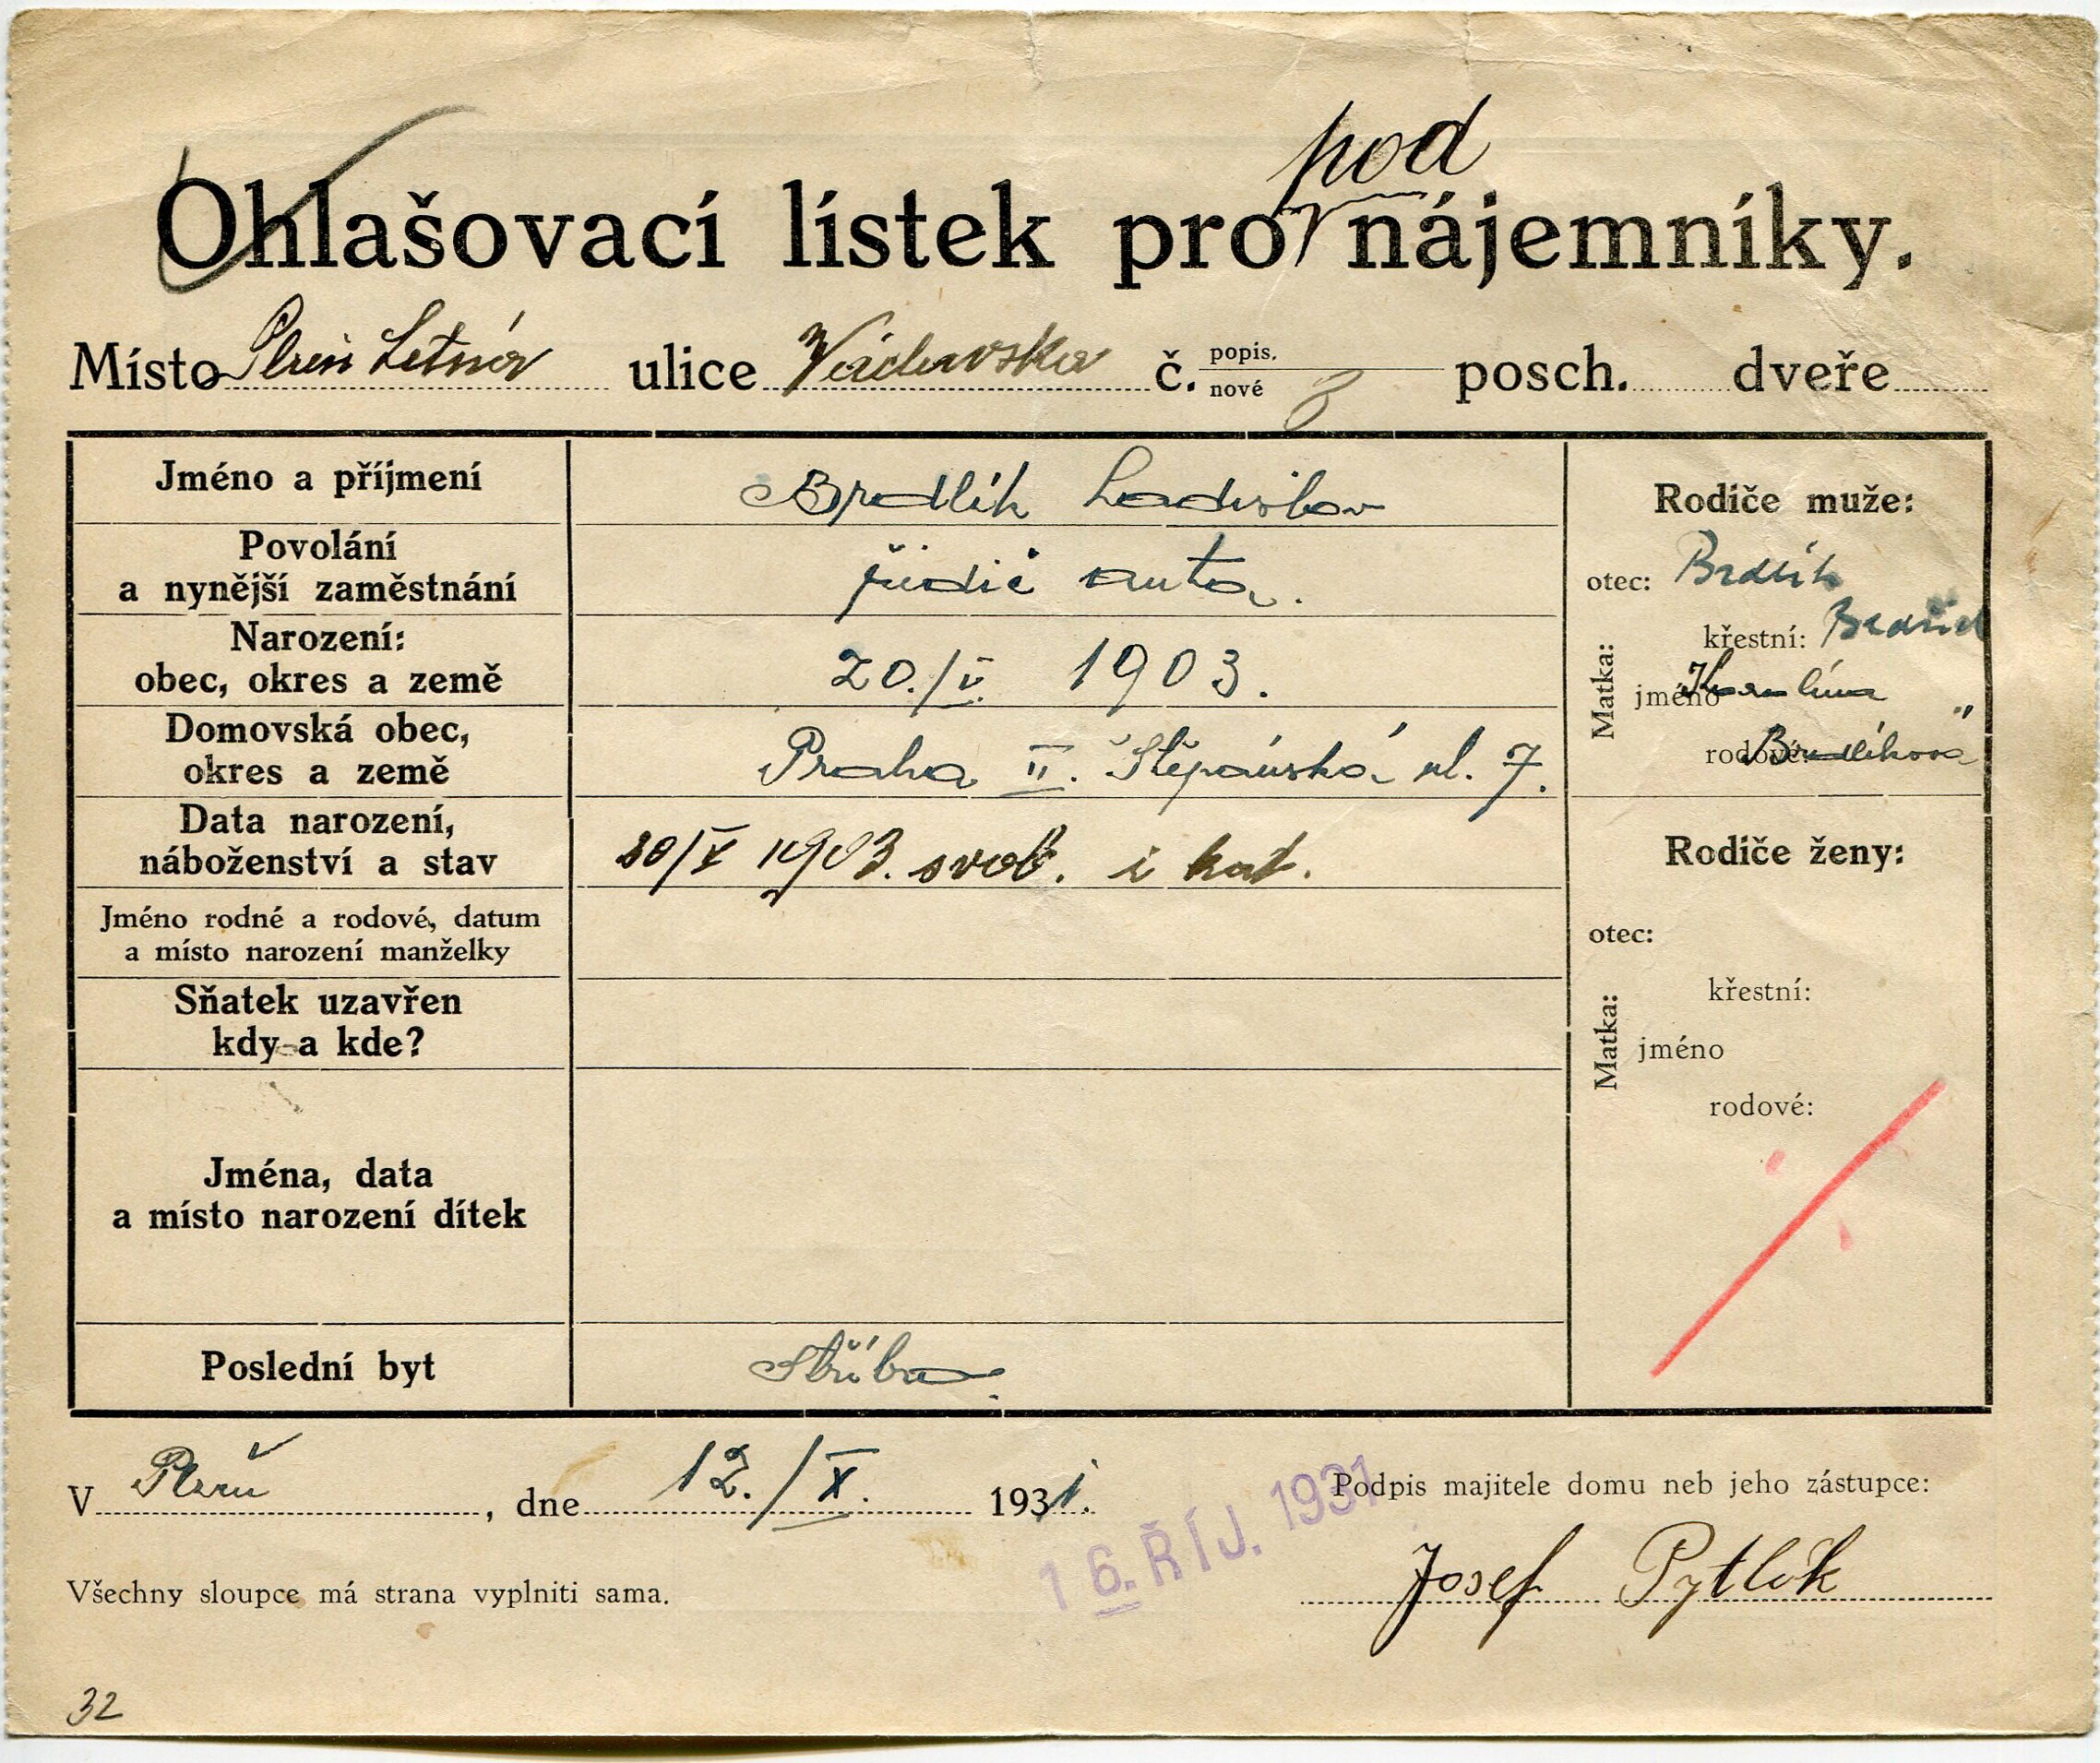 1. soap-pn_10024_brdlik-ladislav-1903_1931-10-12_1